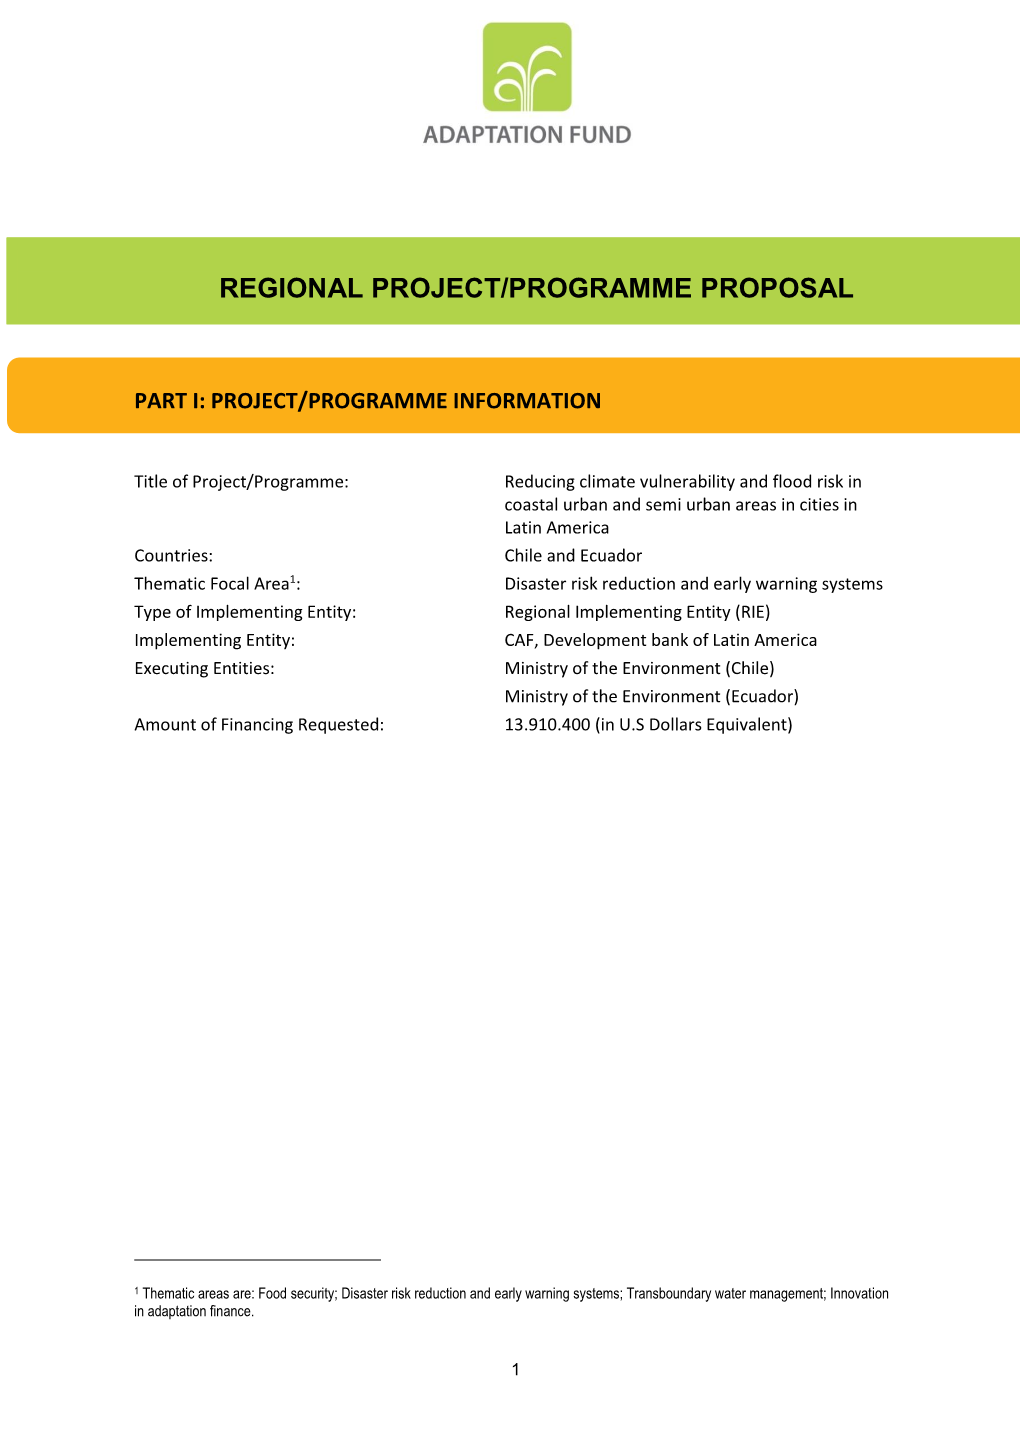 Regional Project/Programme Proposal